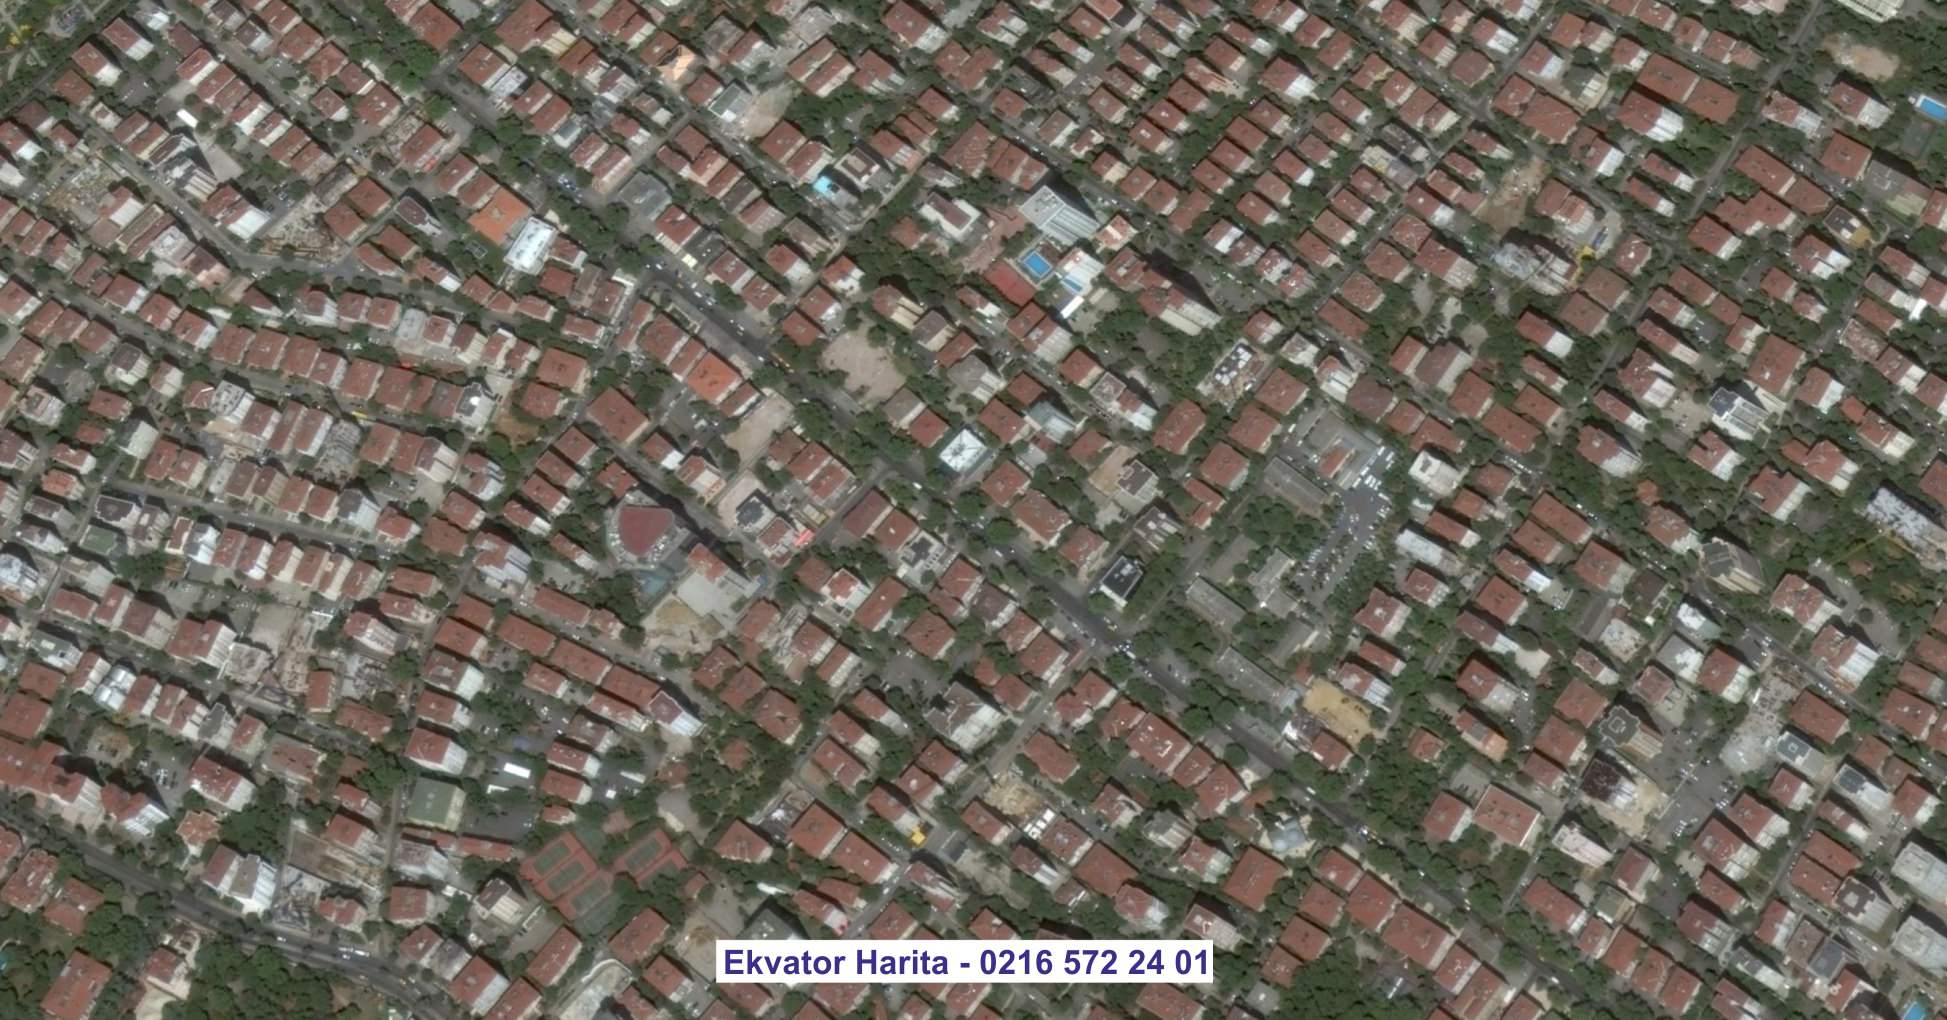 Buca Uydu Görüntüsü Örnek Fotoğrafı